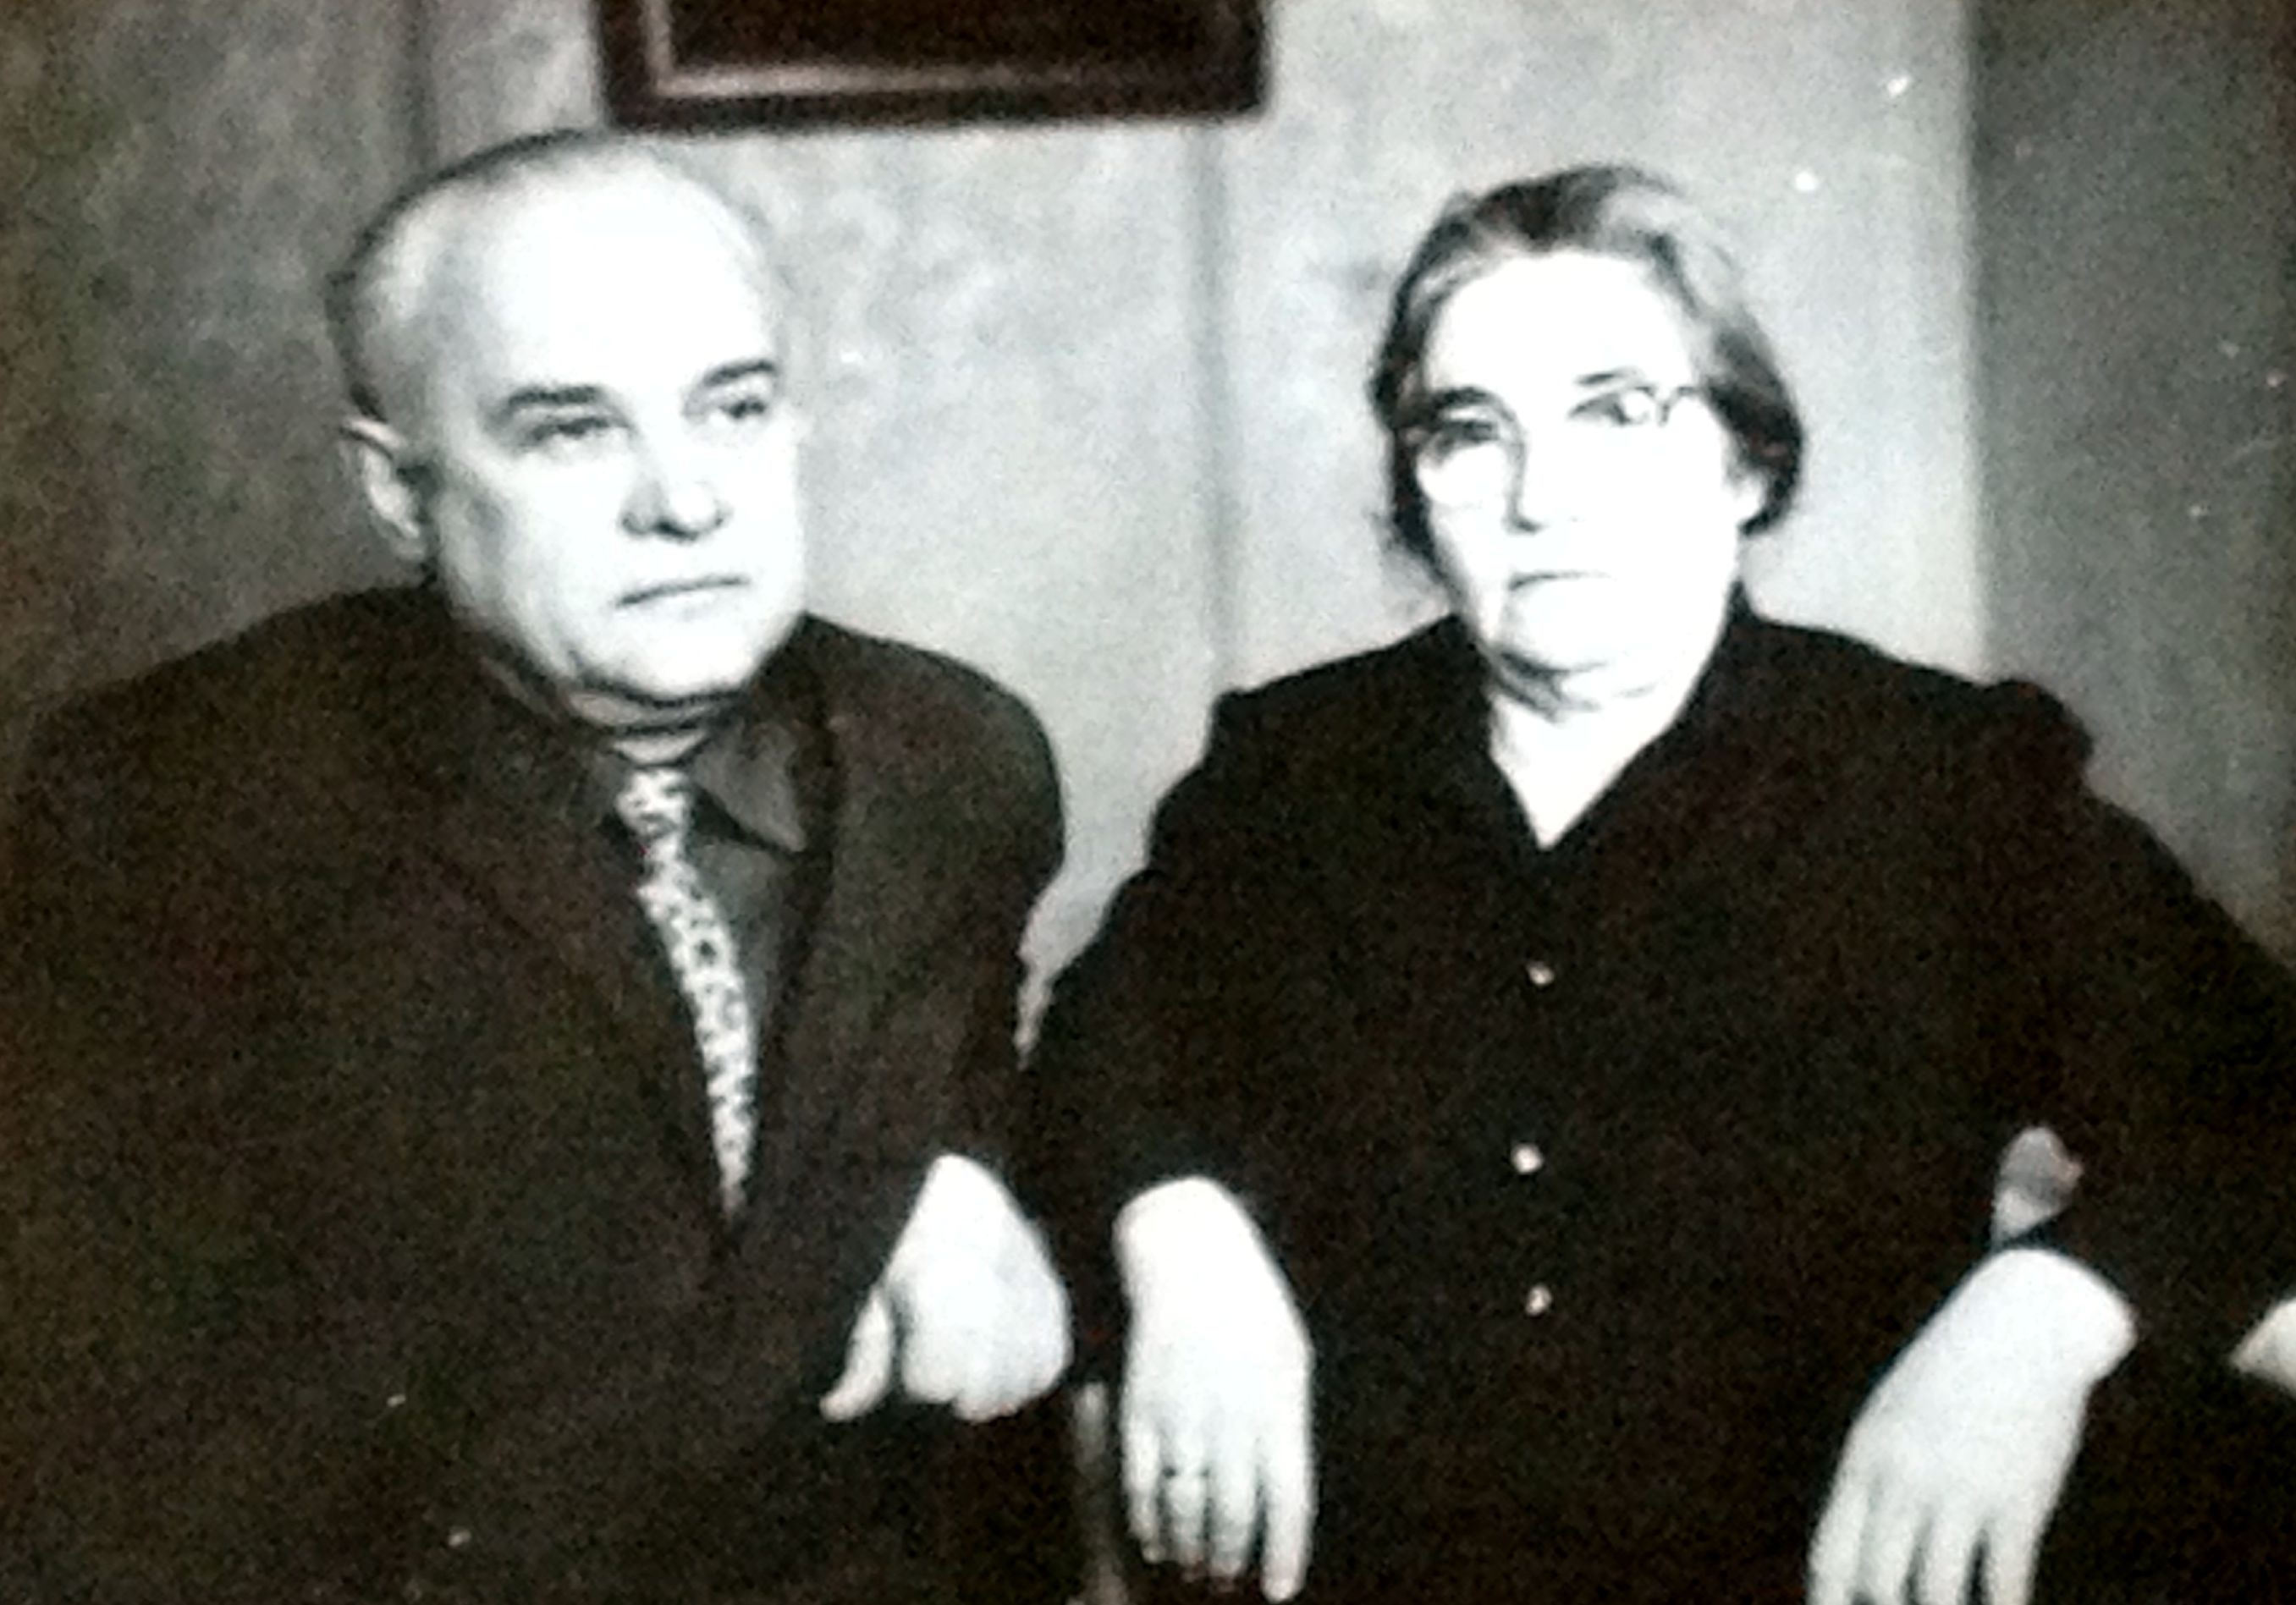 Дмитро Дереч со своей женой Дереч (Дьяченко) Людмилой. Они пронесли свою любовь через многие годы.